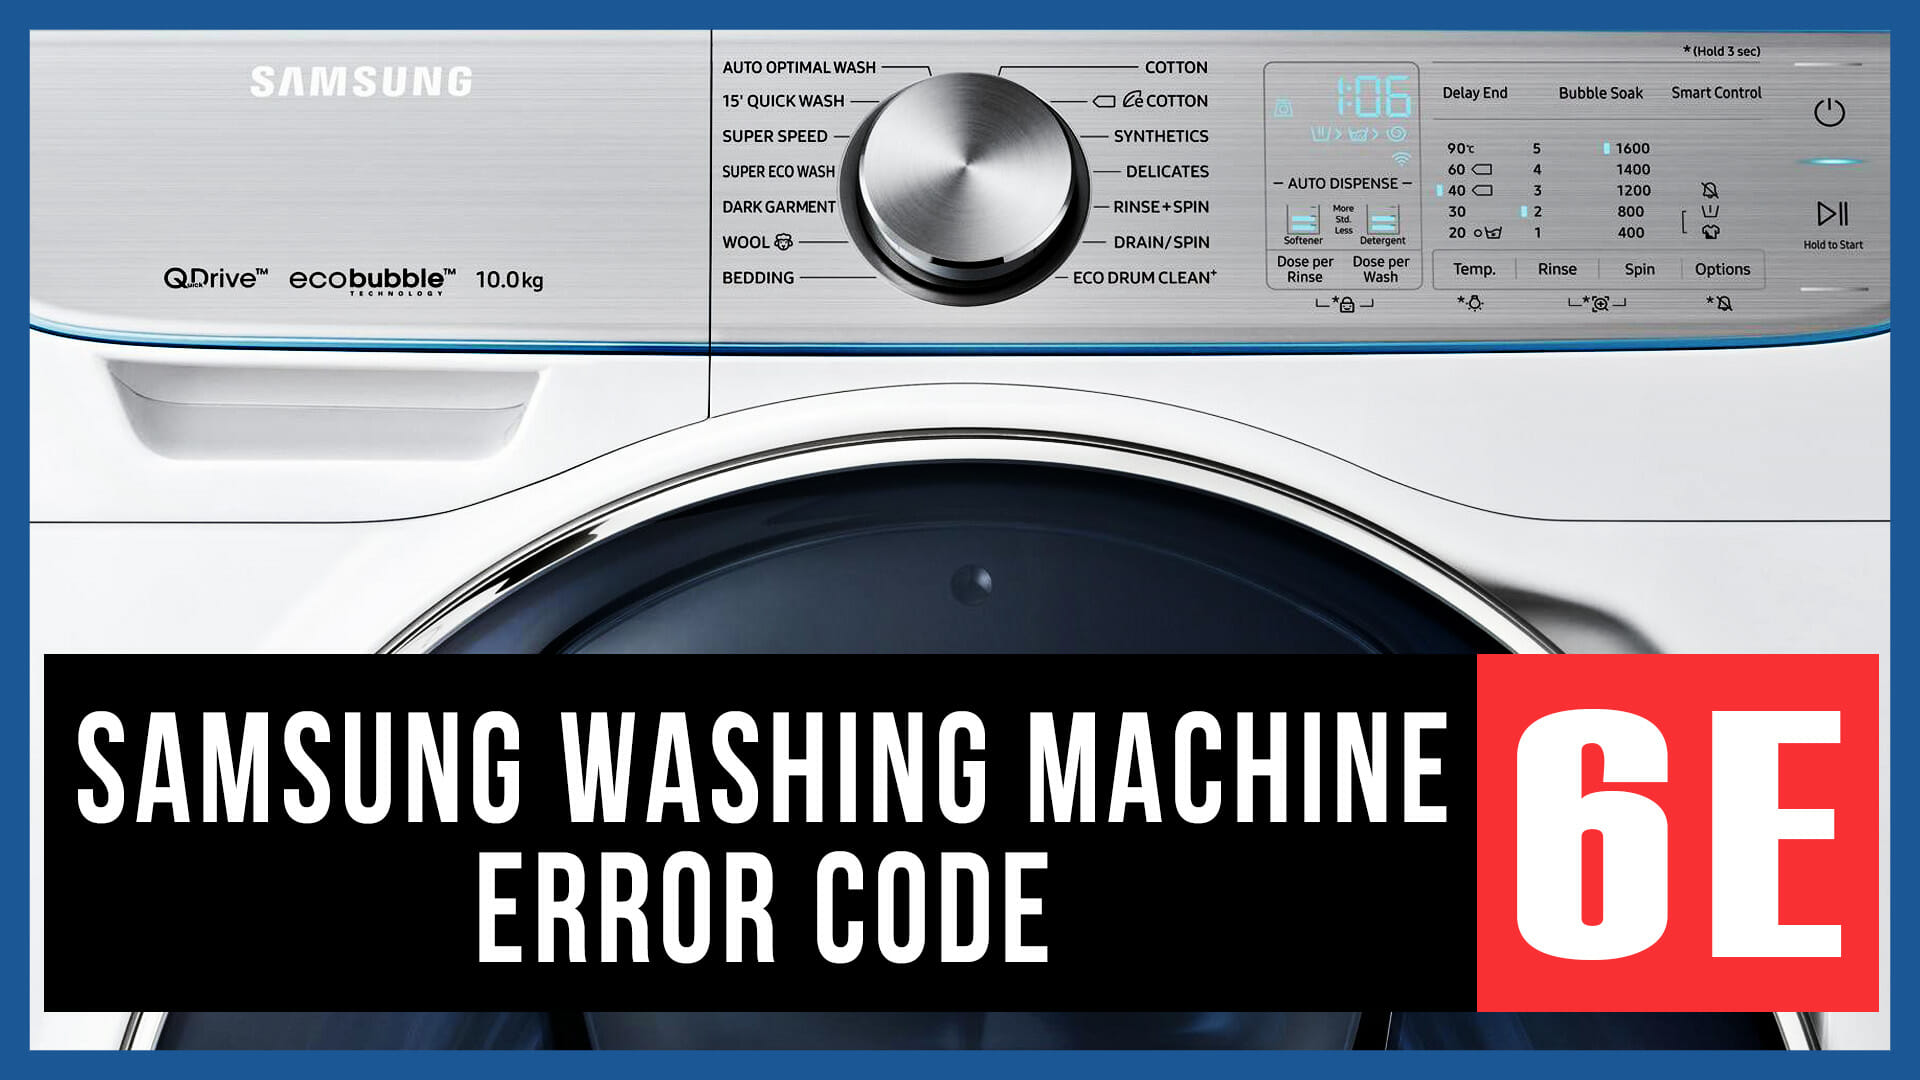 Samsung washing machine error code 6E